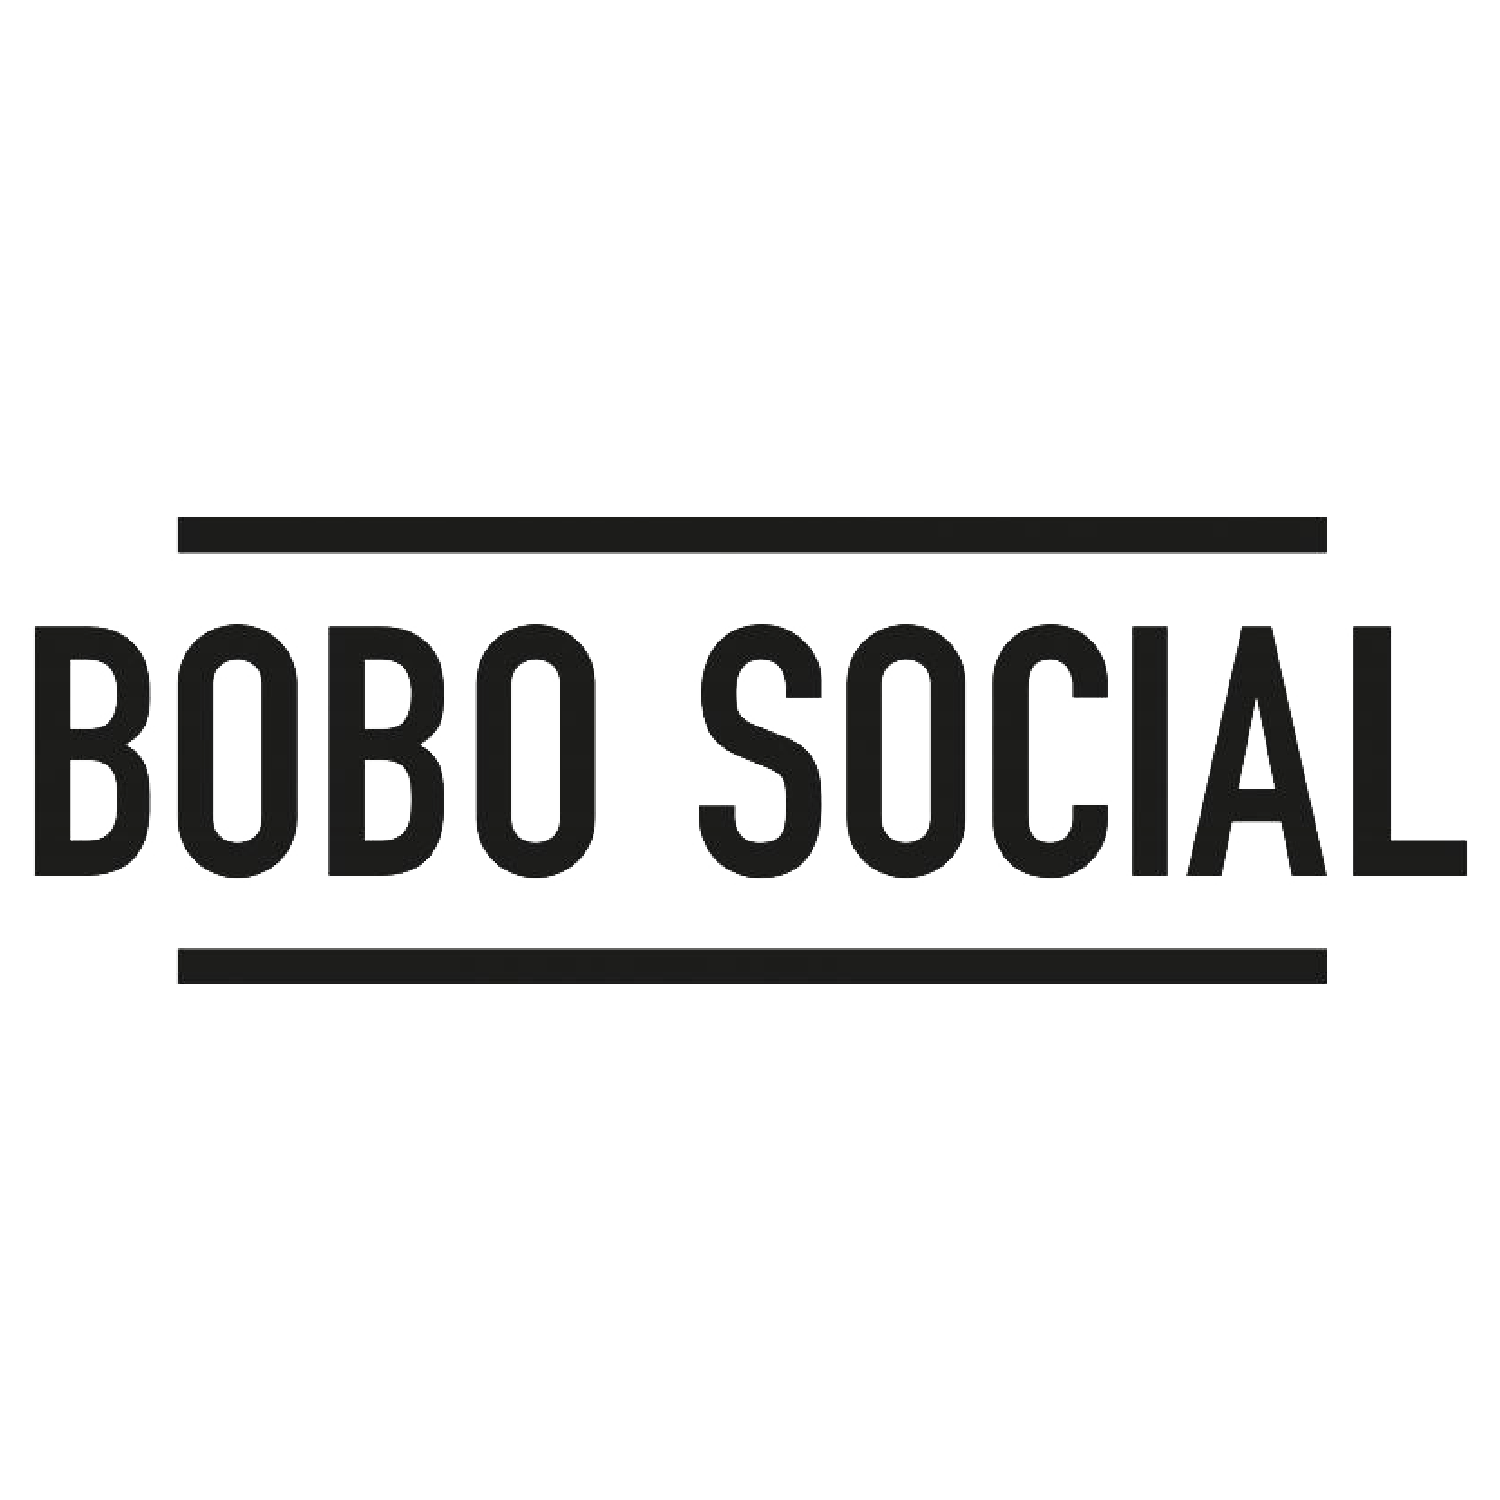 BoboSocial.png